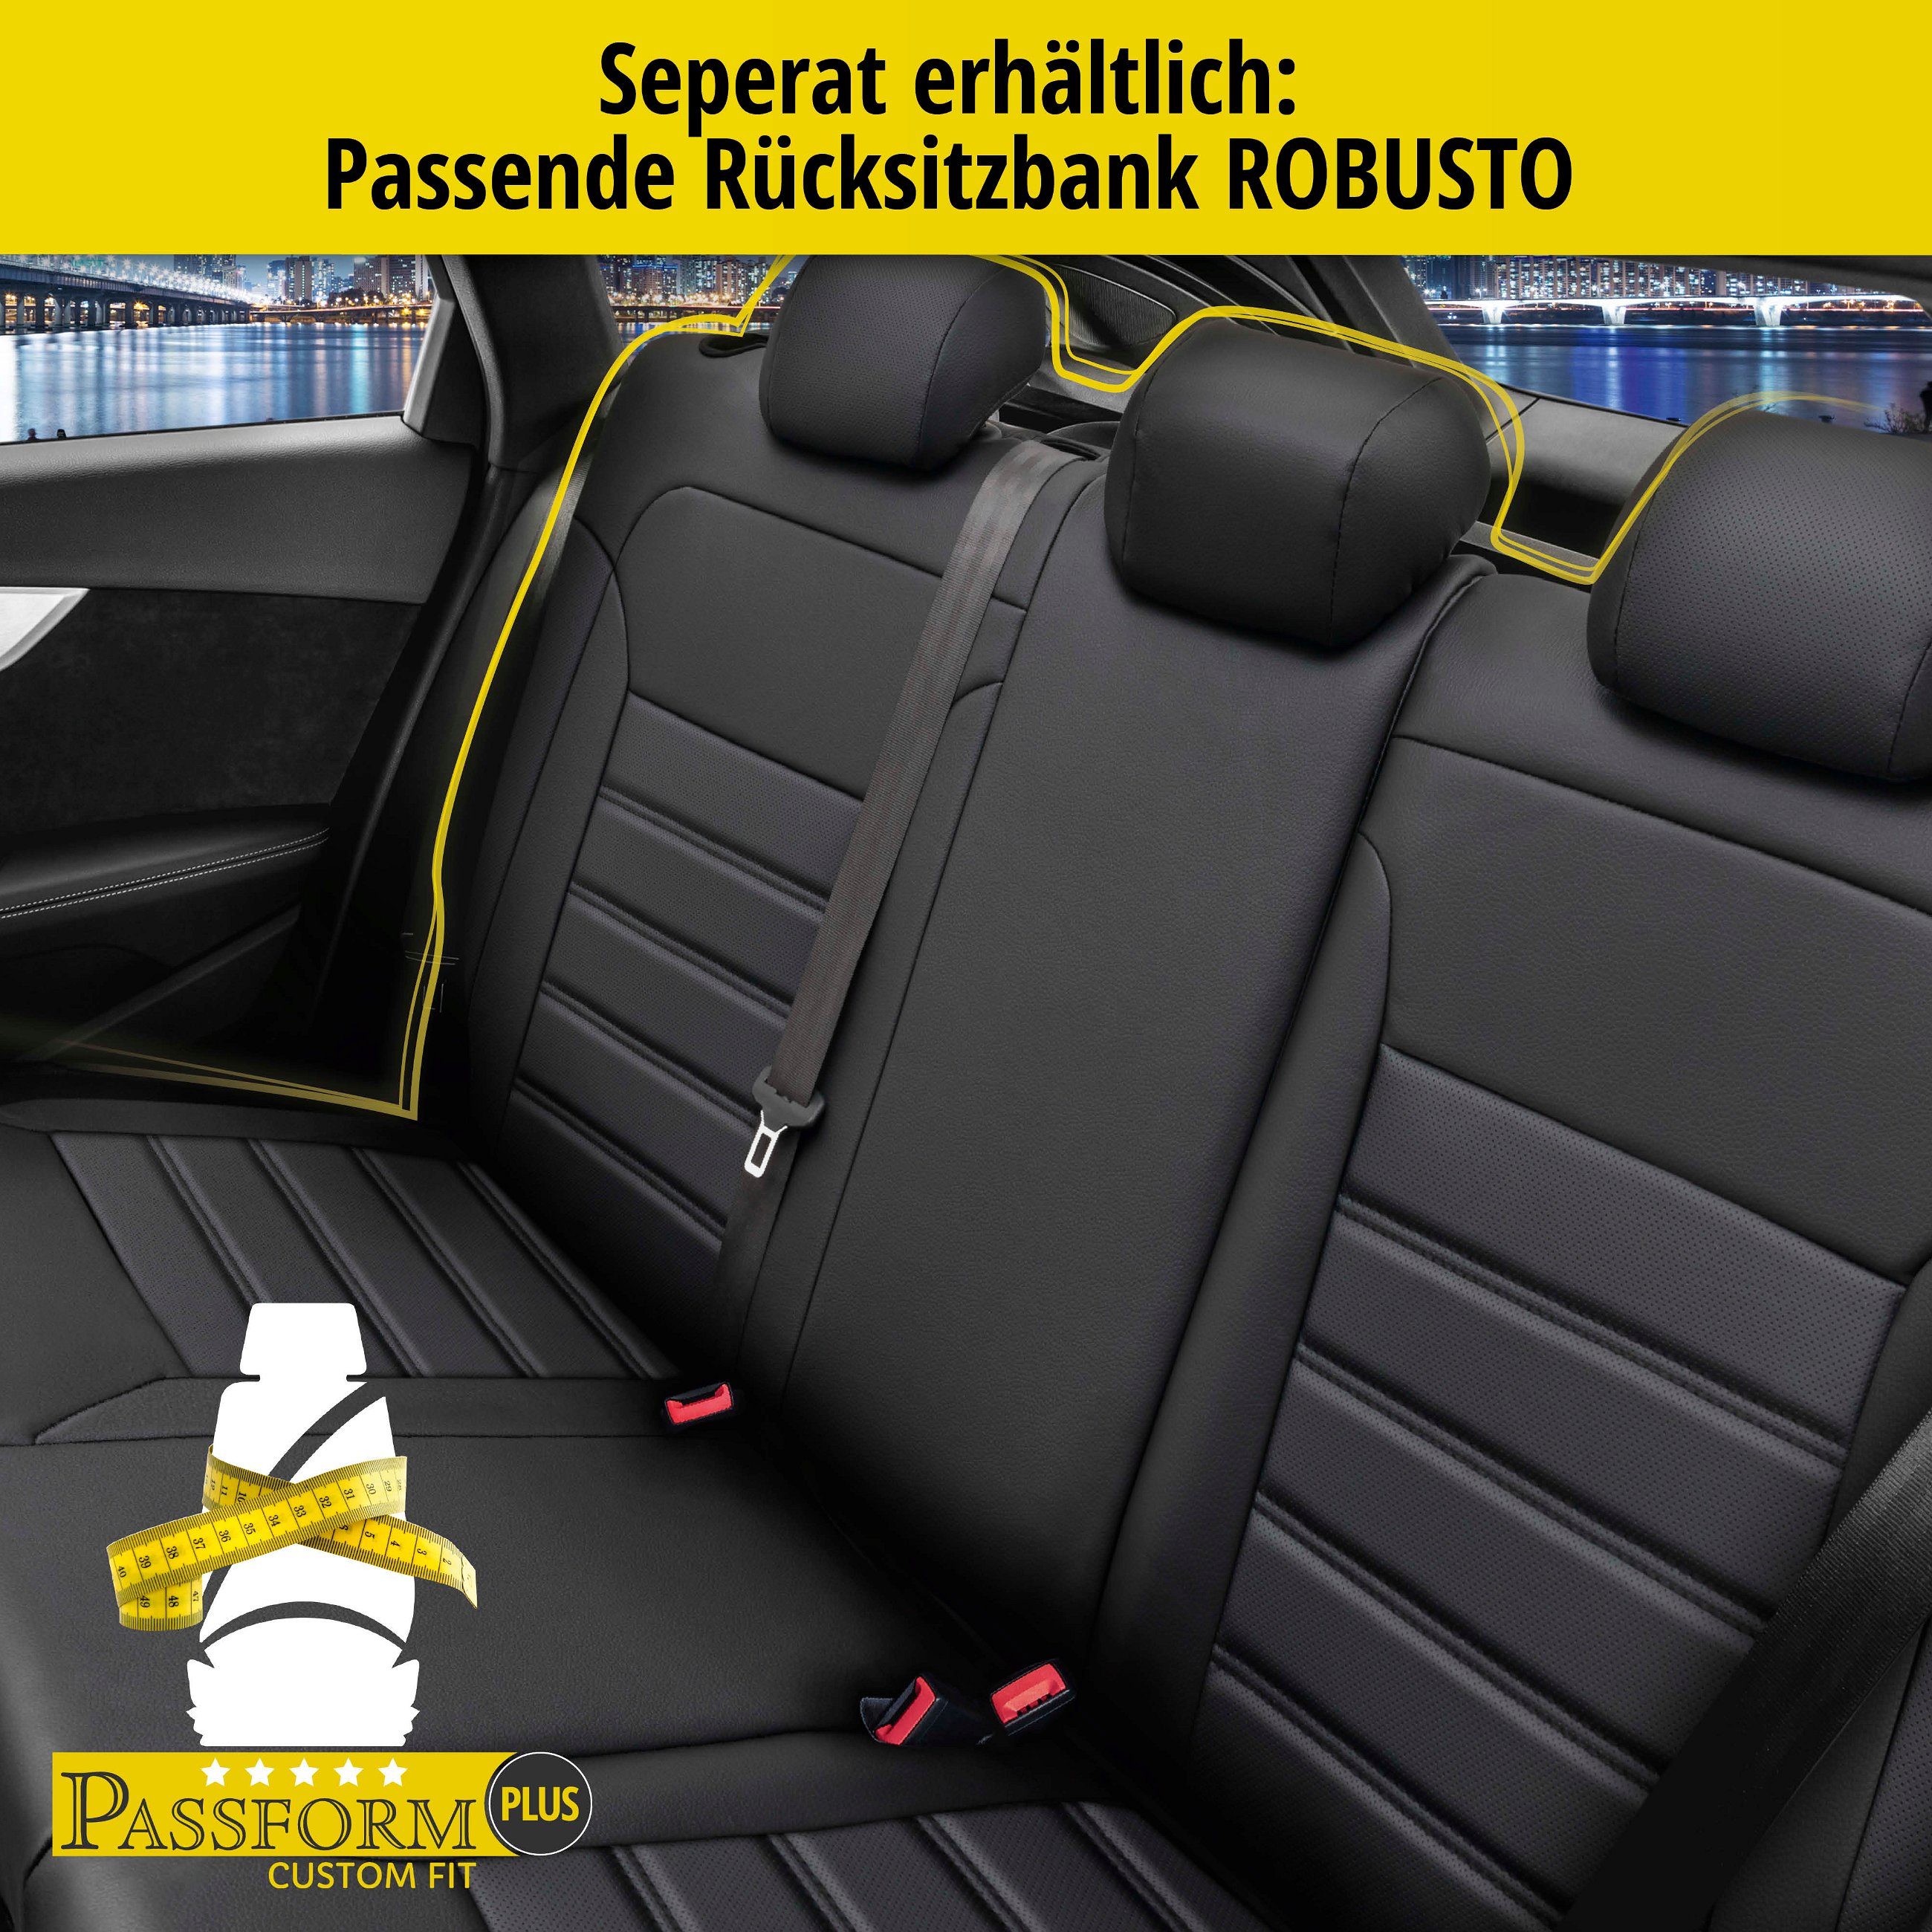 Passform Sitzbezug Robusto für Skoda Rapid 07/2012 - 12/2019, 2 Einzelsitzbezüge für Normalsitze